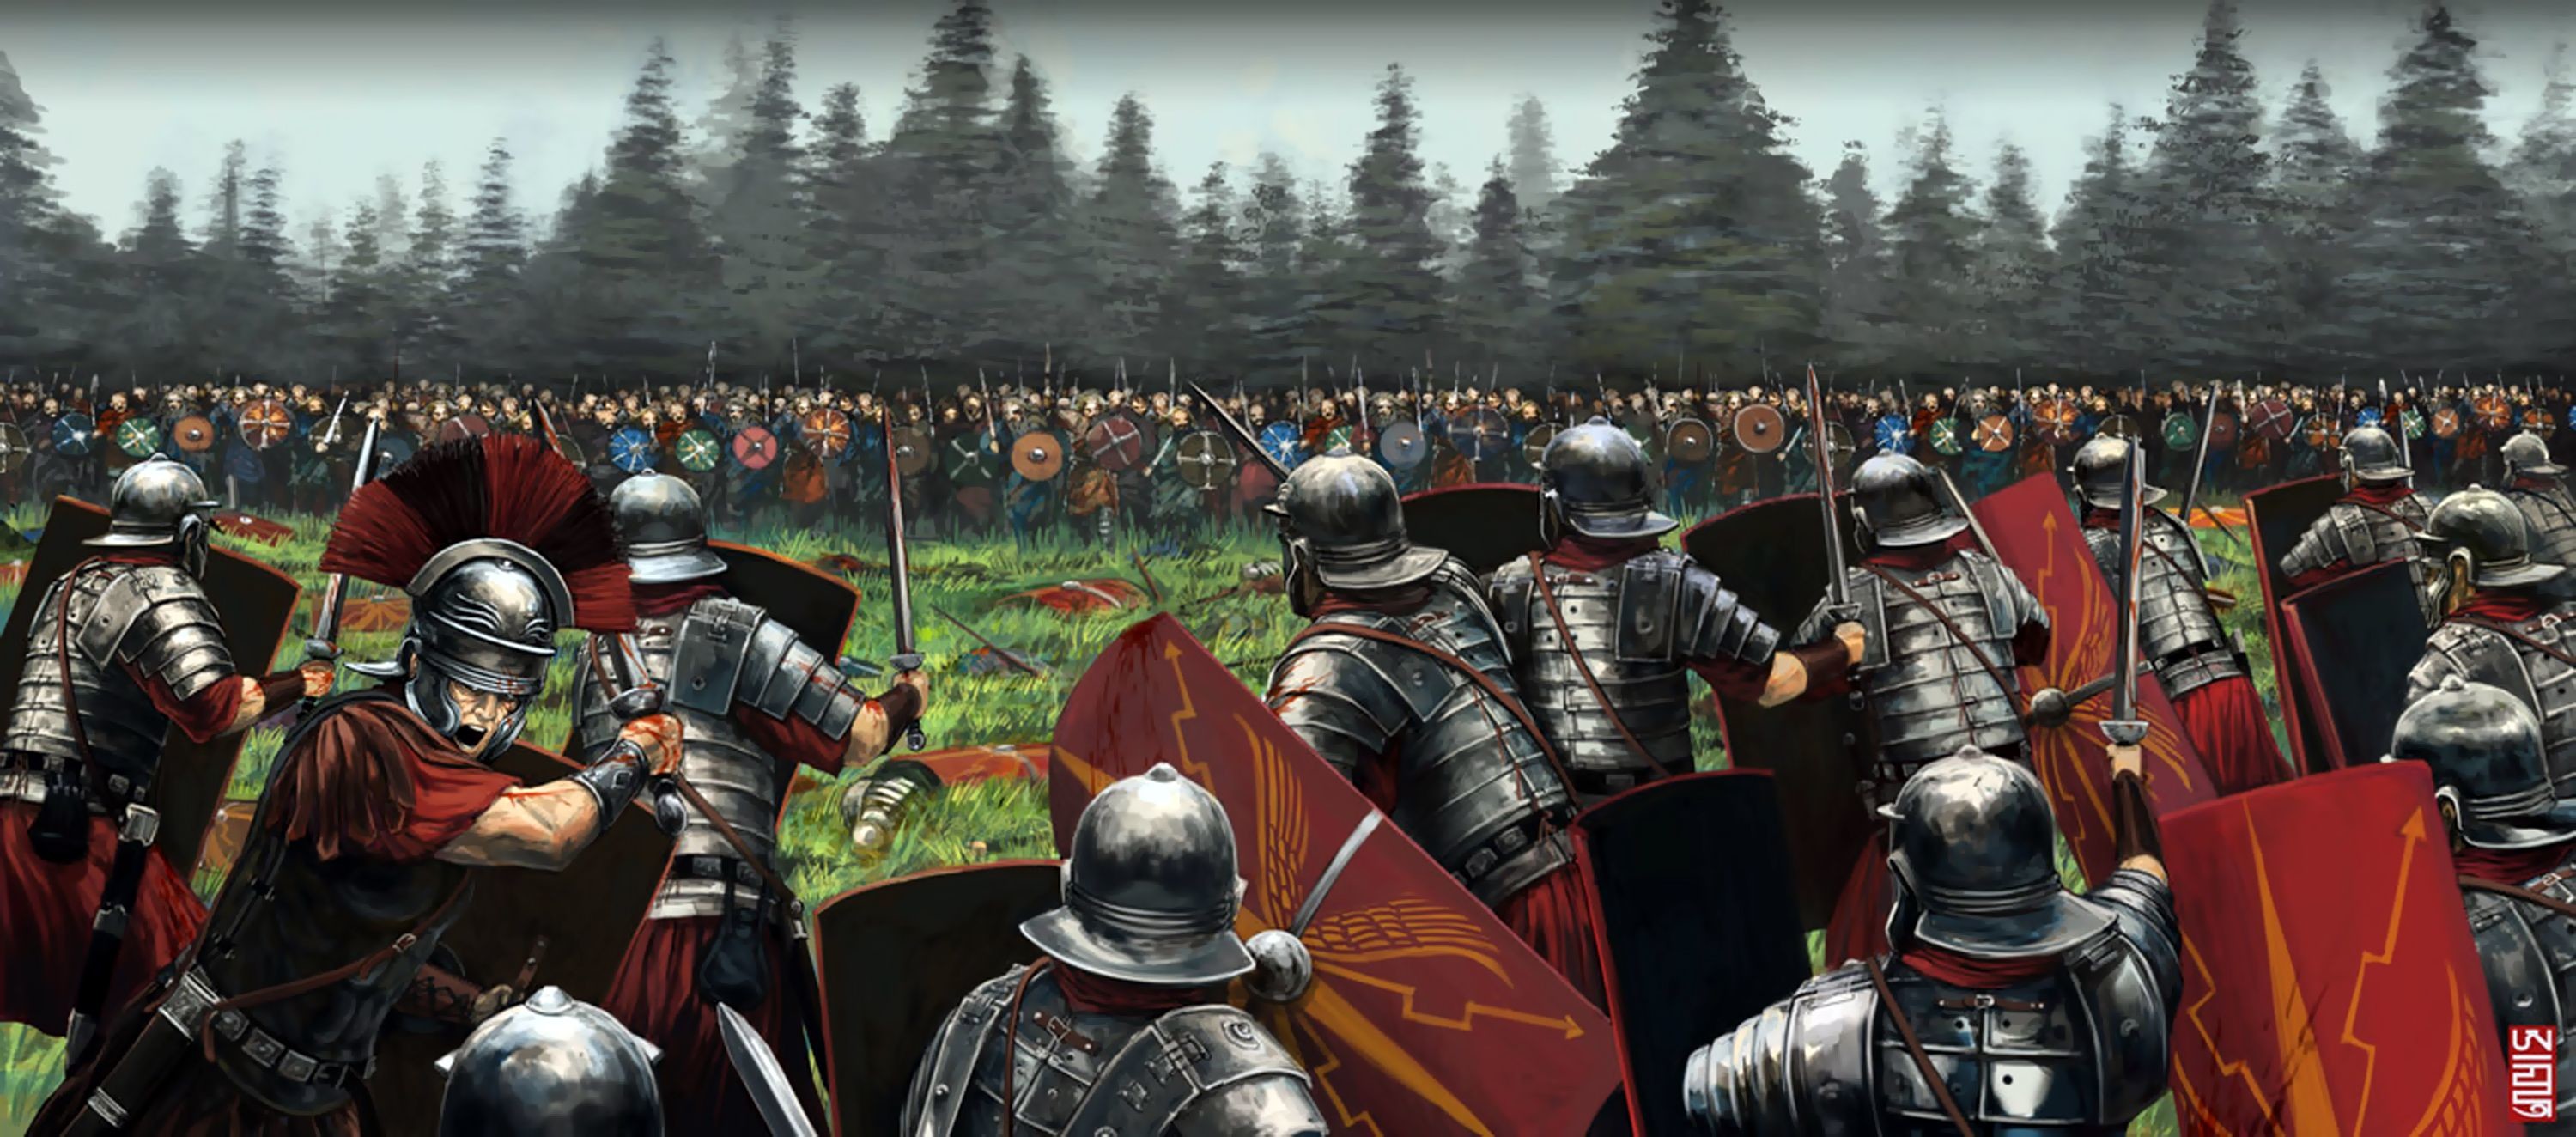 ローマ軍団の壁紙,人,鎧,中世,pcゲーム,騎士